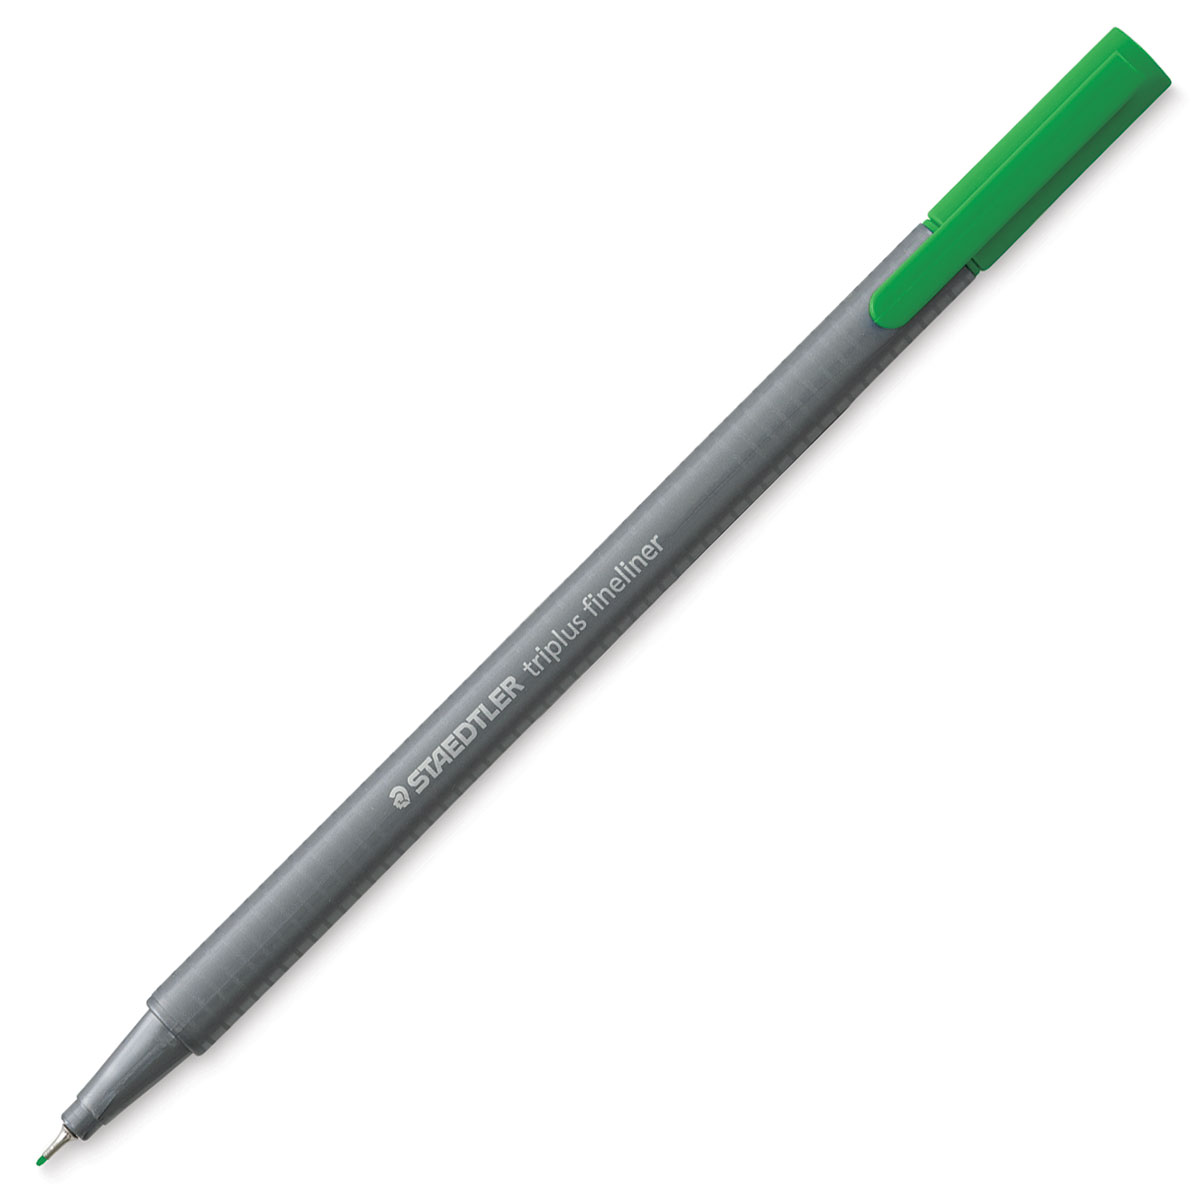 Triplus Fineliner Pen Sets